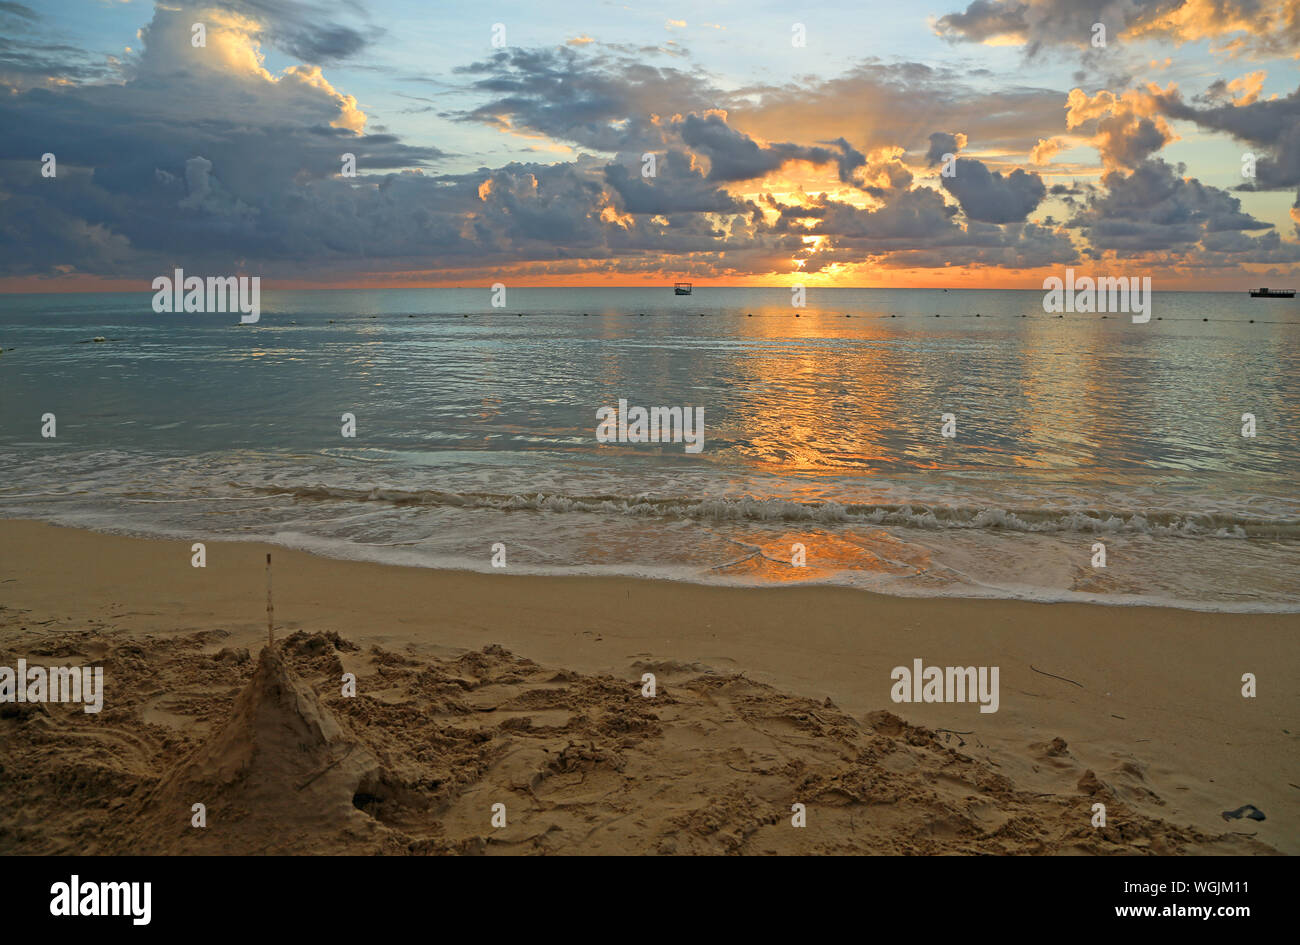 La plage au coucher du soleil - Jamaïque Banque D'Images